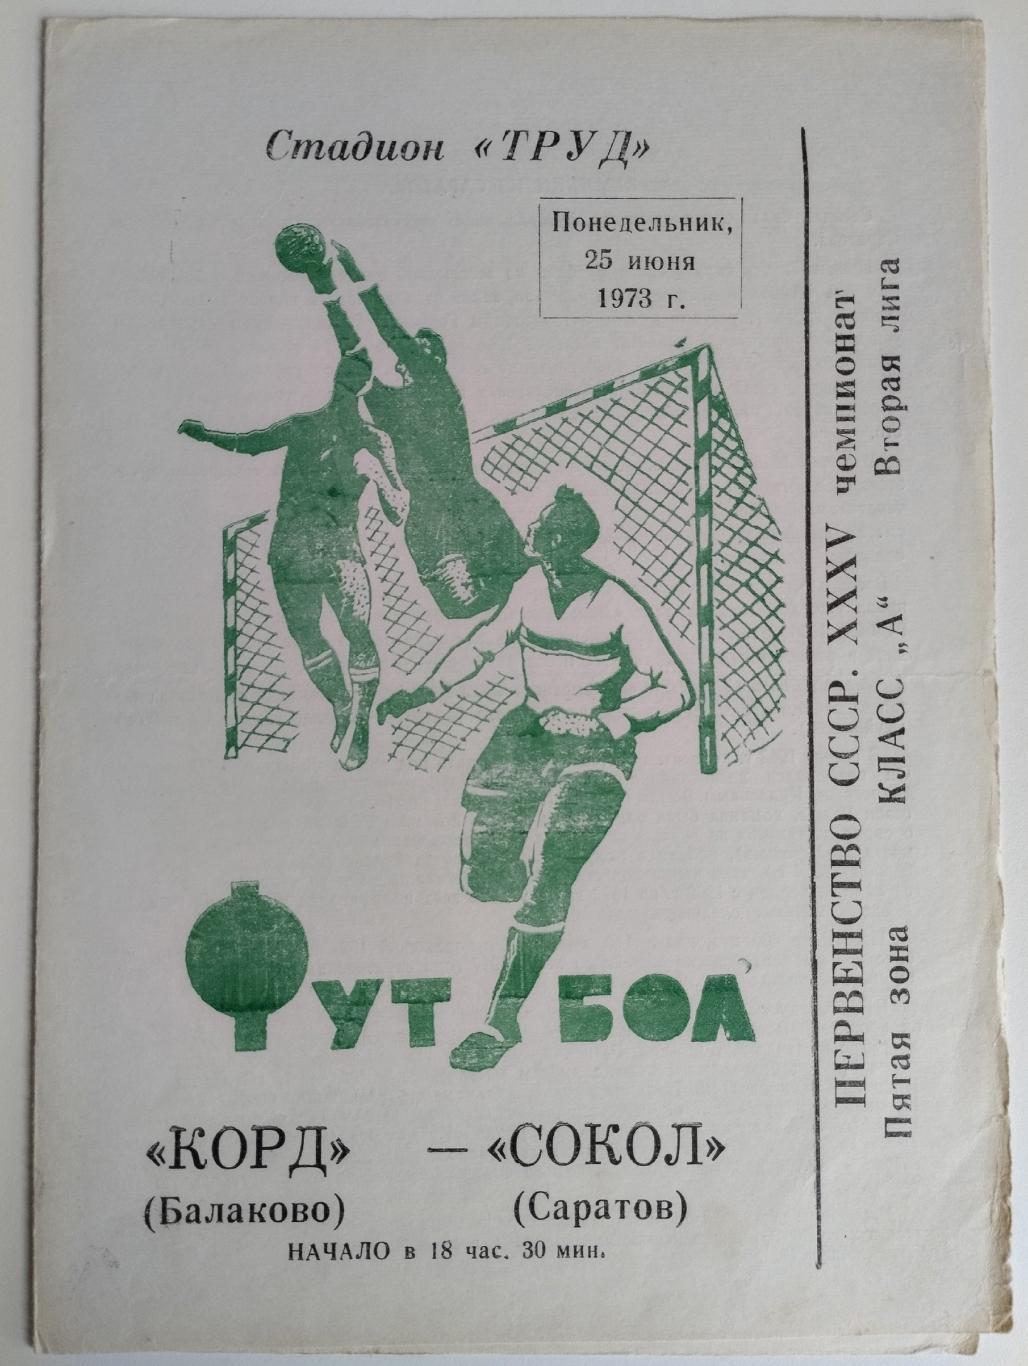 Корд Балаково - Сокол Саратов 25.06.1973